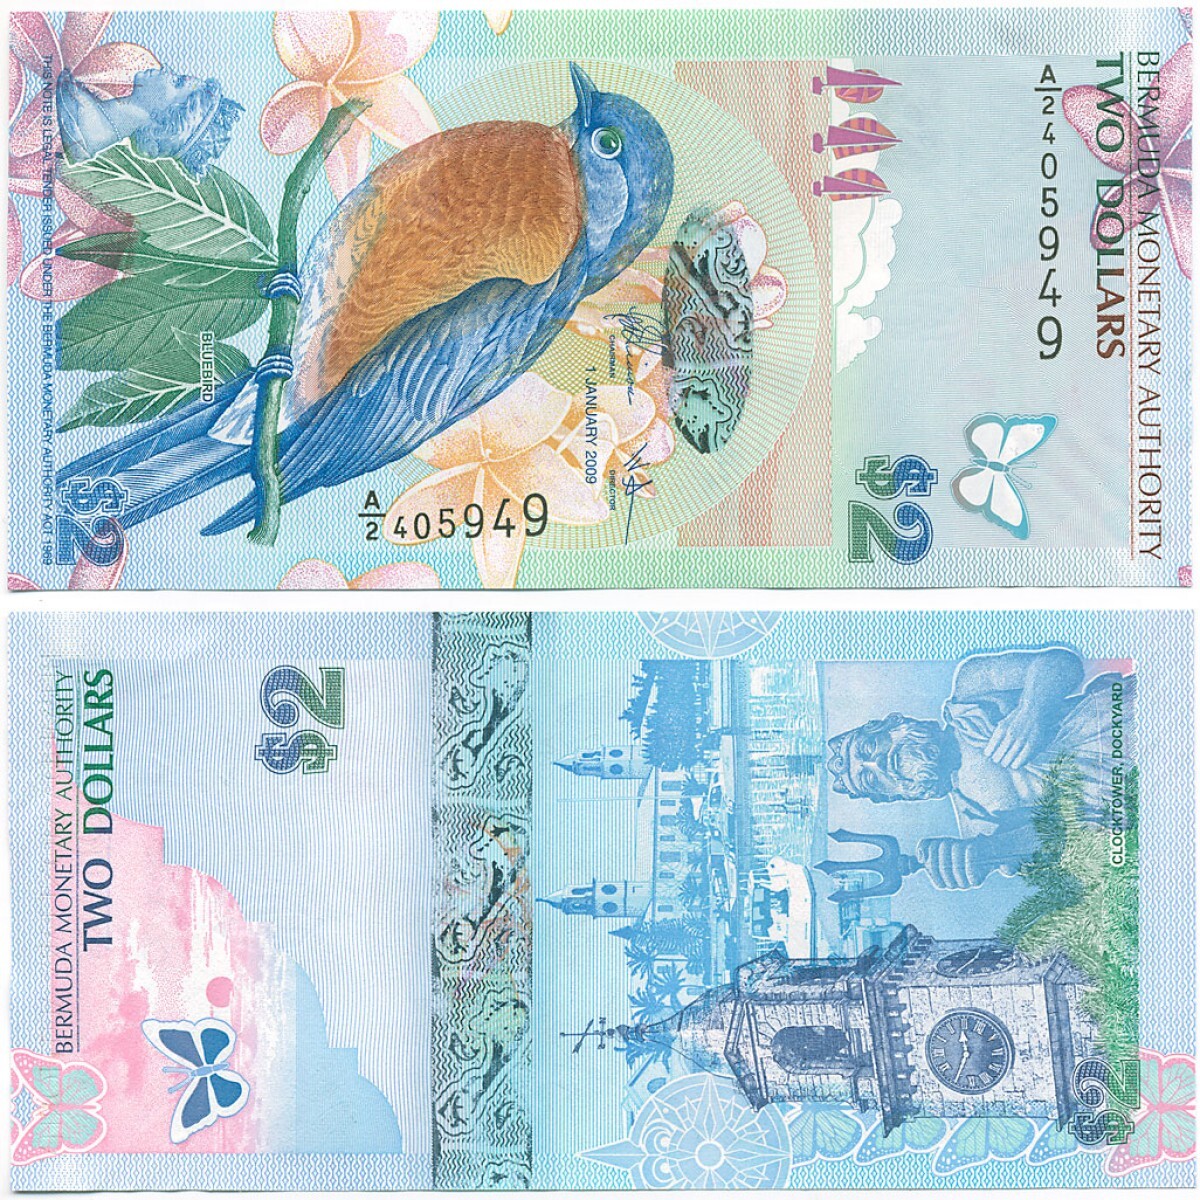 Купюры 2009. Банкноты Бермудских островов. 2 Доллара Бермудских островов 2009 года. Купюры Бермудских островов. 2 Доллара, Бермудские острова (2009г.).